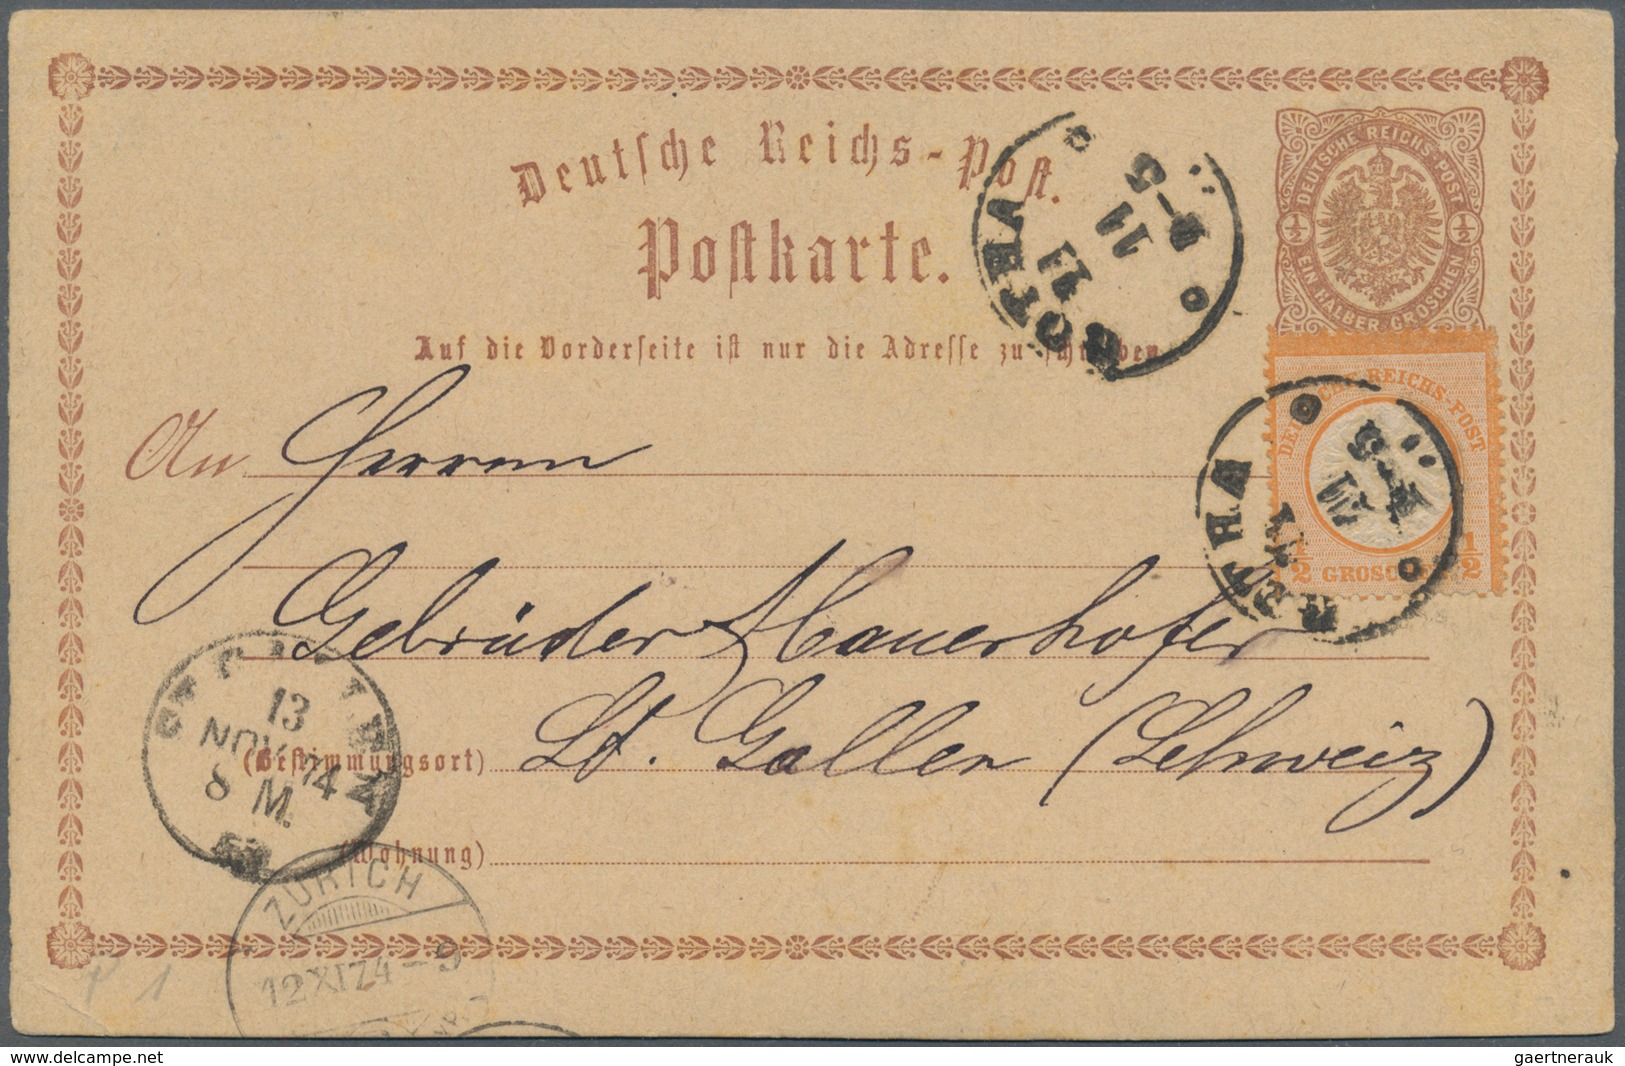 Deutsches Reich - Brustschild: ab ca. 1872, herrlicher Posten von rund 180 Belegen mit imposanten Fr